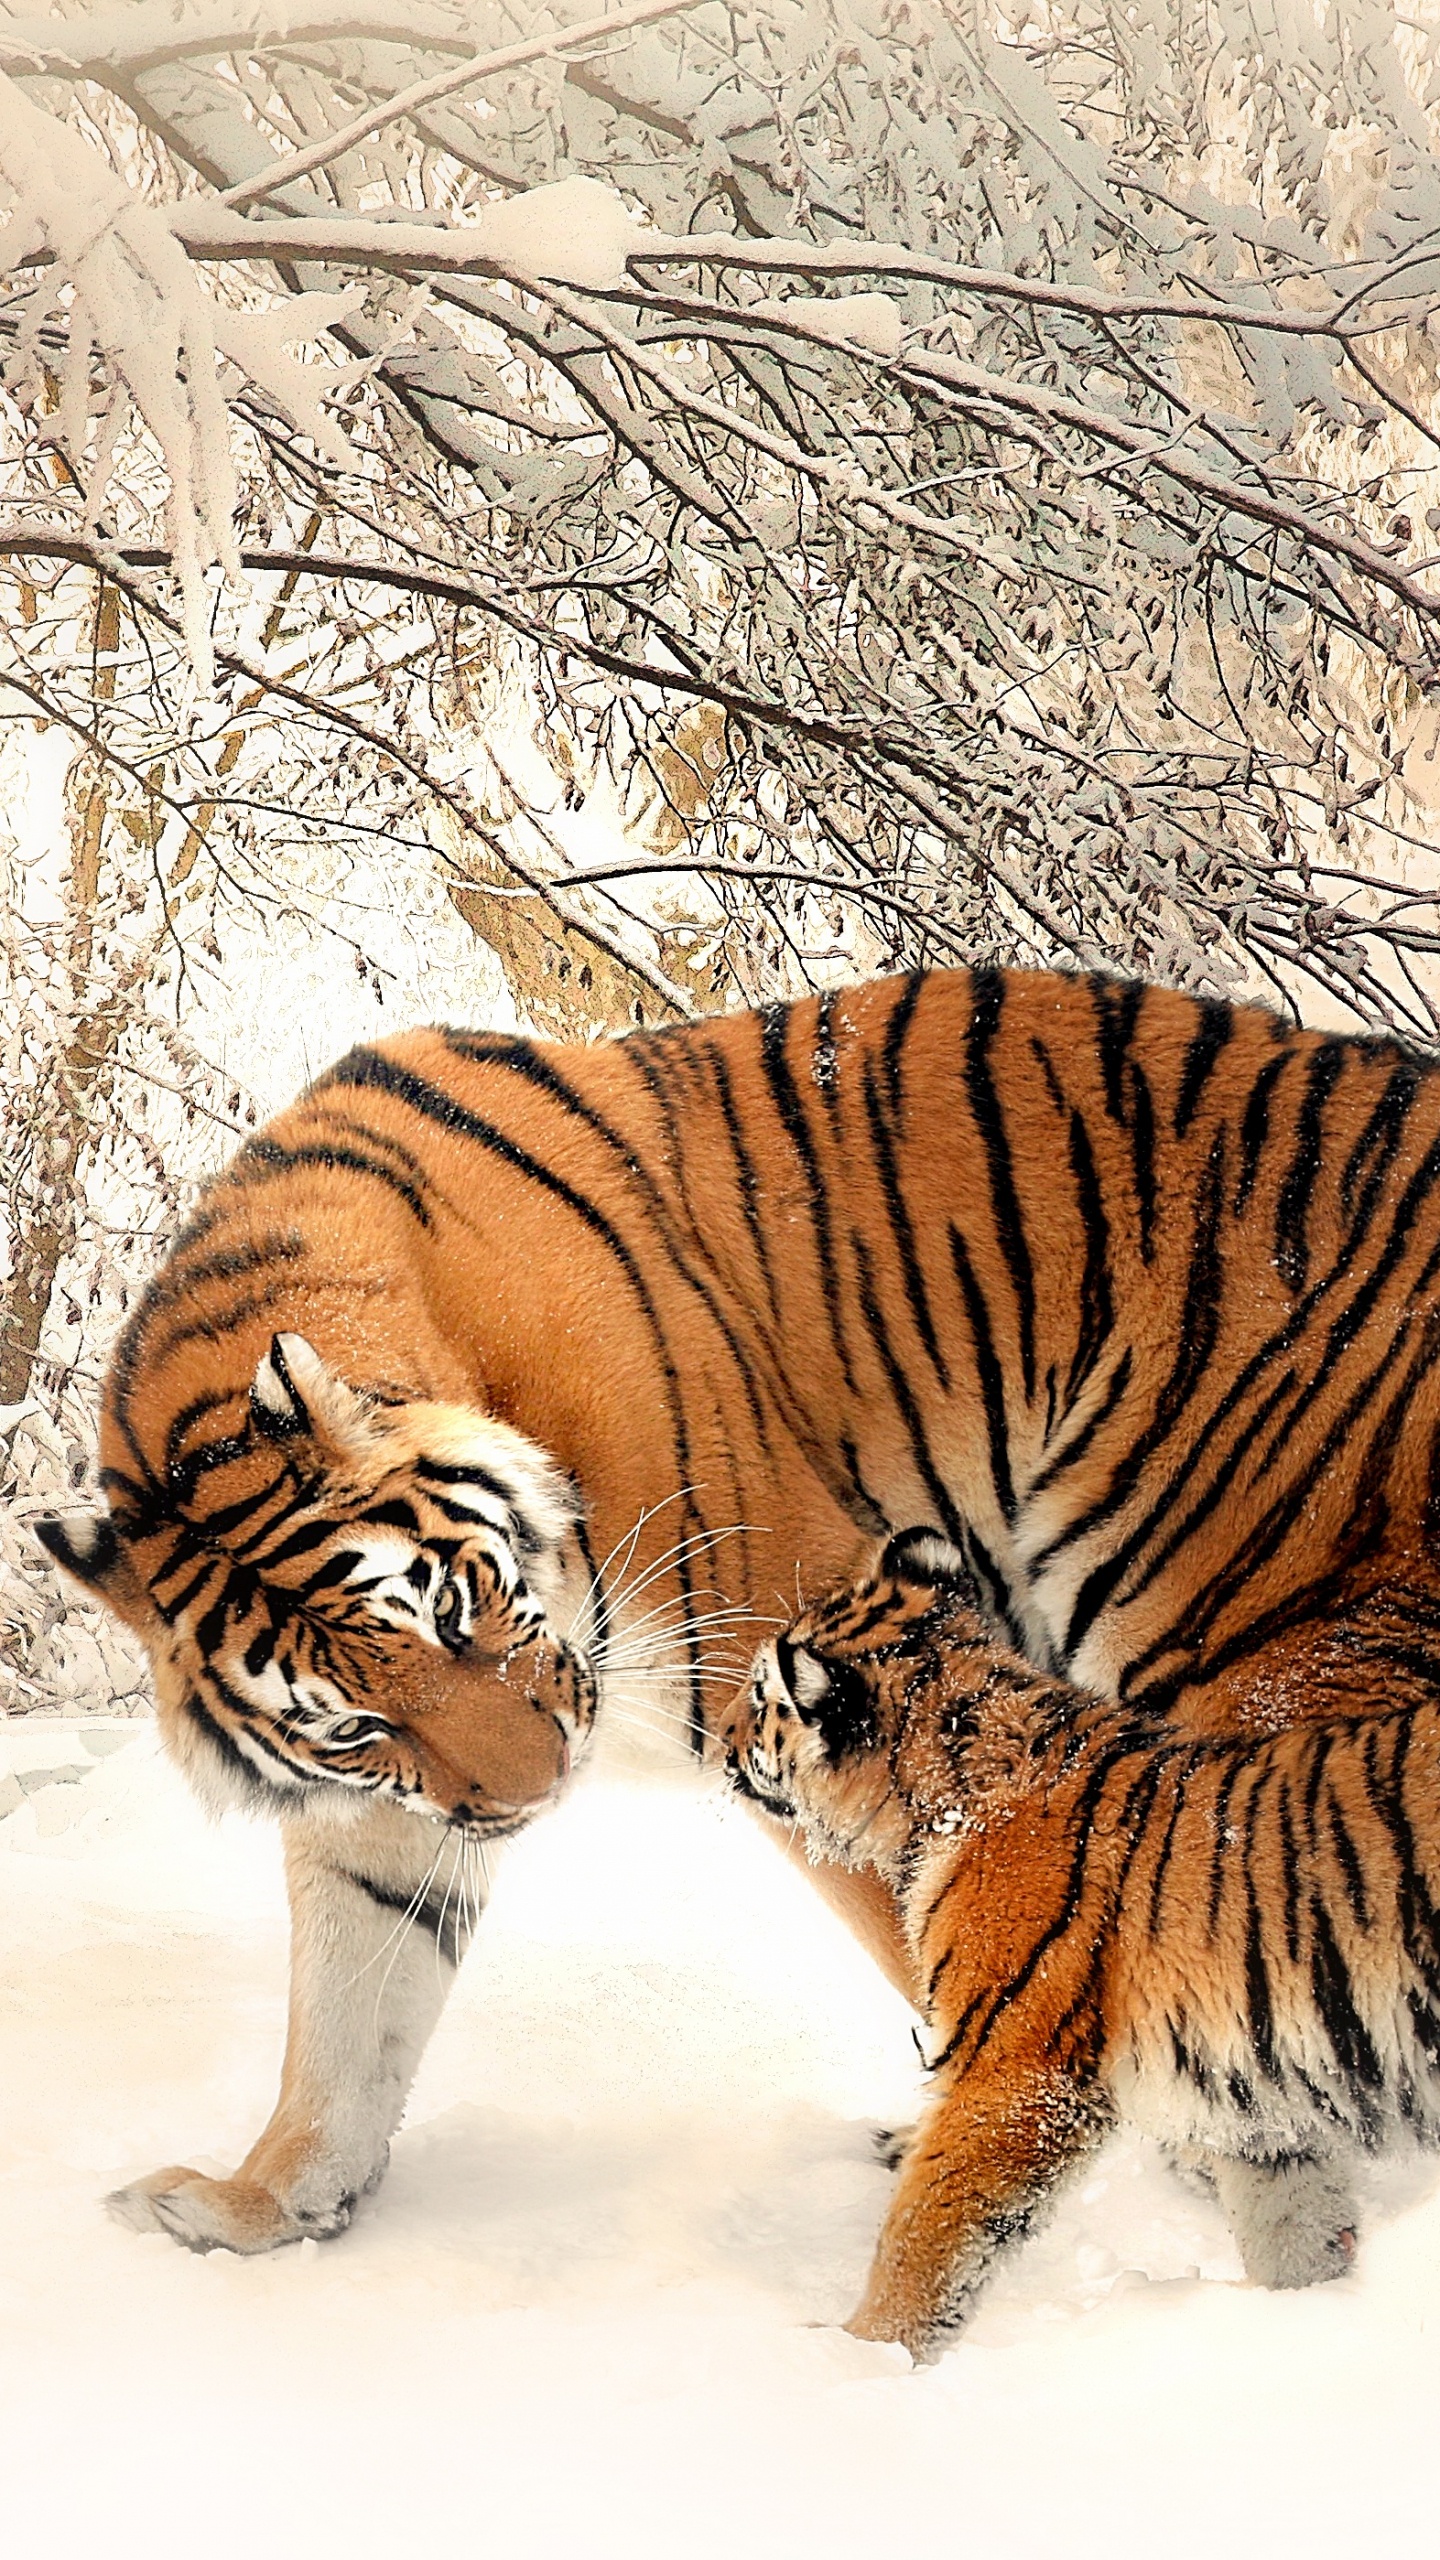 Tiger, Der Tagsüber Auf Schneebedecktem Boden Läuft. Wallpaper in 1440x2560 Resolution